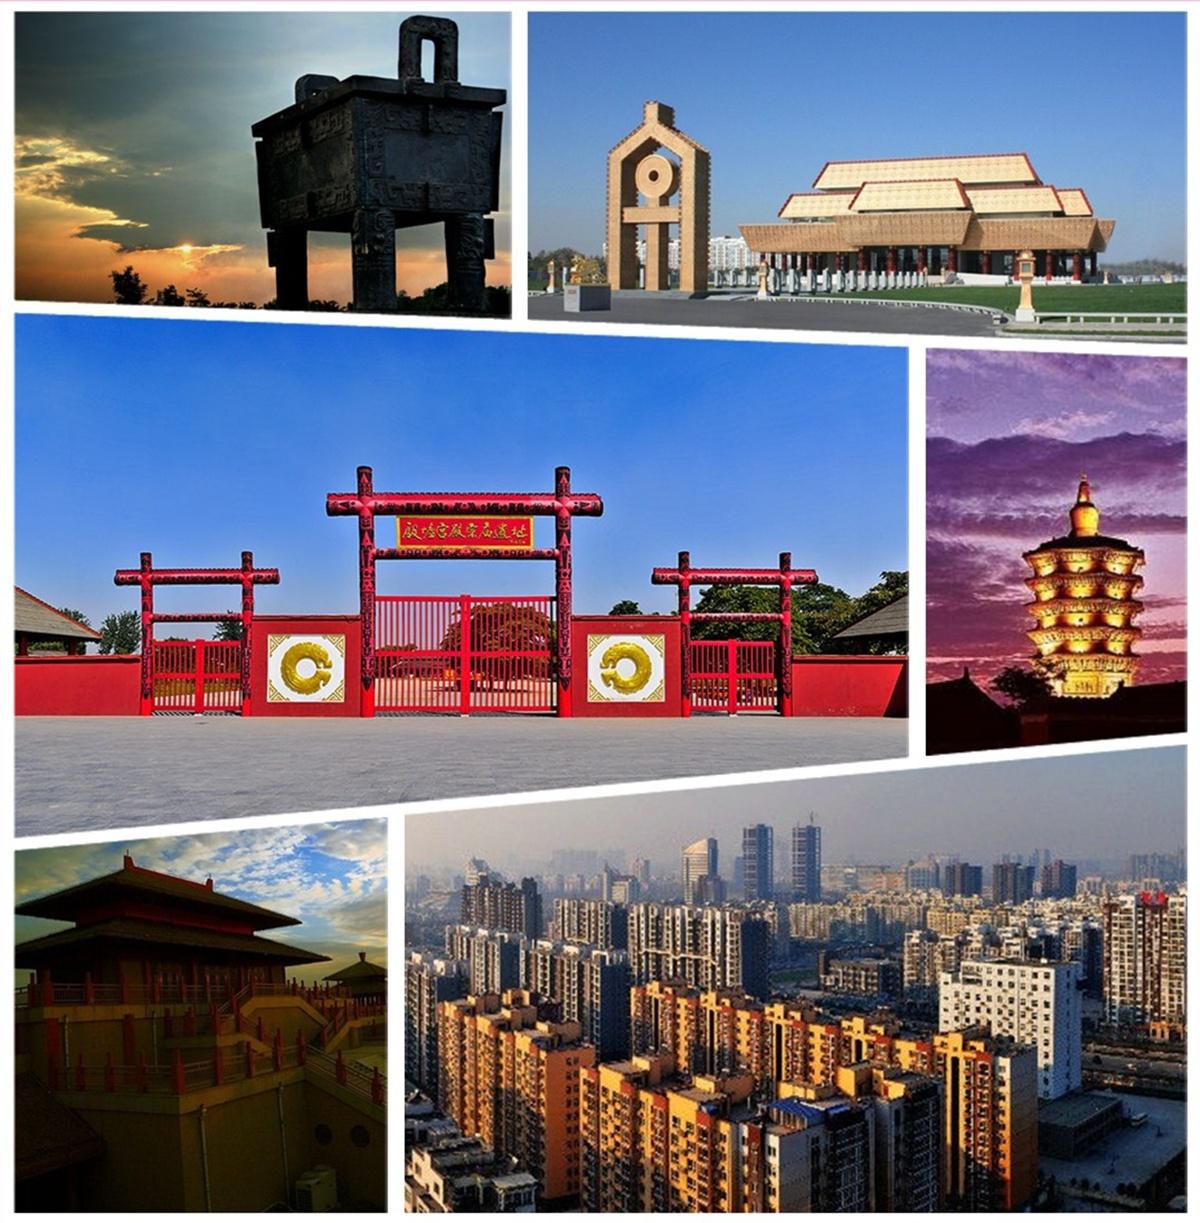 安阳是河南省地级市,位于河南省最北部,是豫晋冀三省交界地区区域性